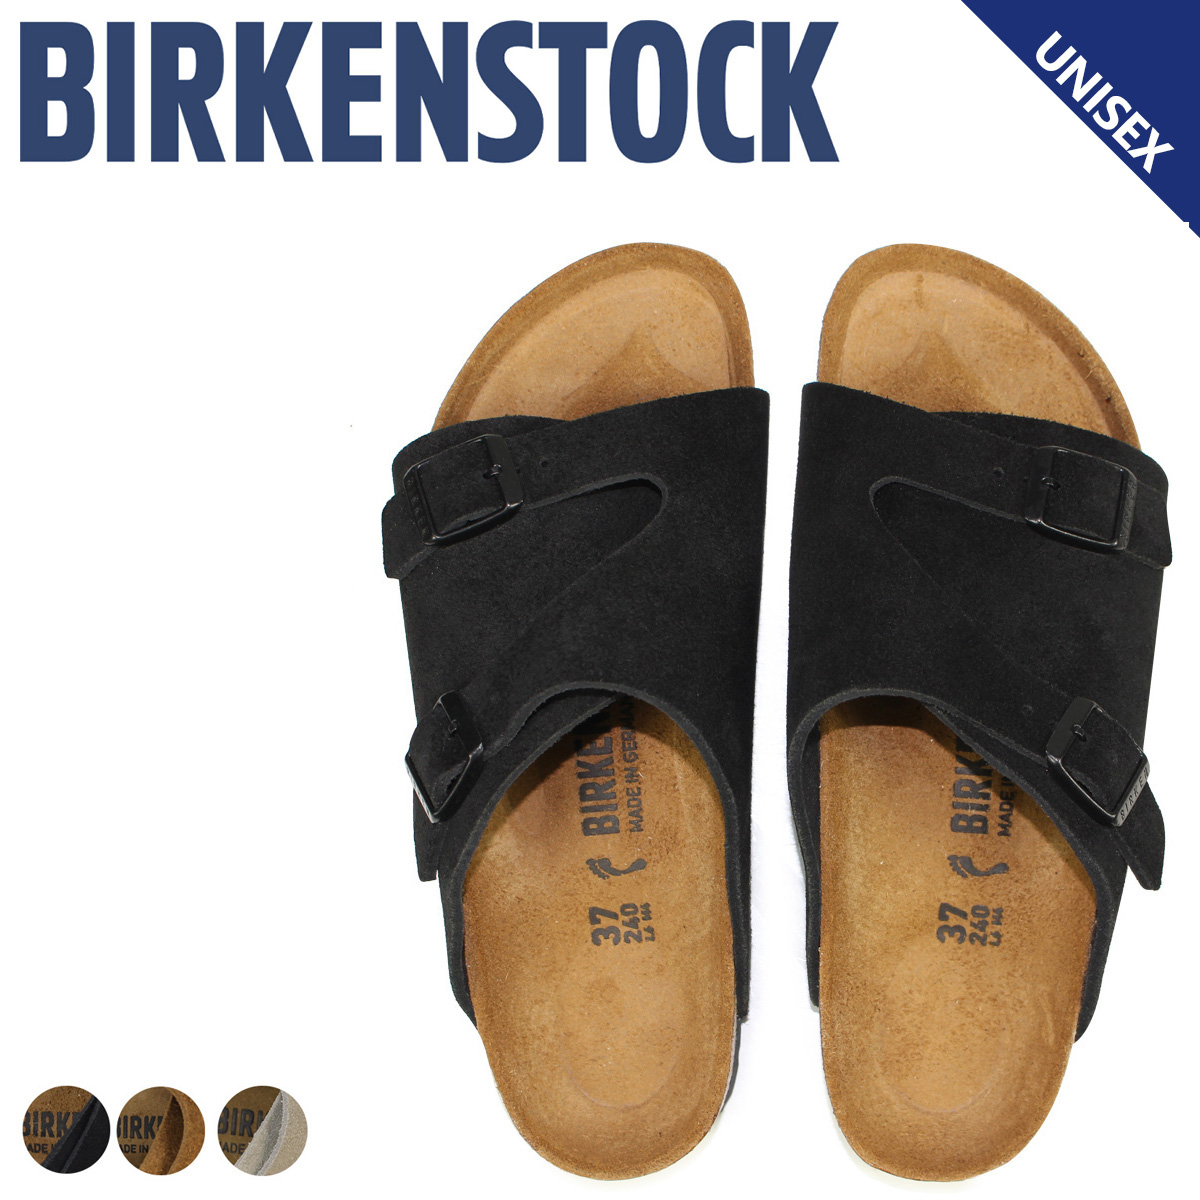 SneaK Online Shop: Birkenstock BIRKENSTOCK Zurich ZURICH 8 color men's ...